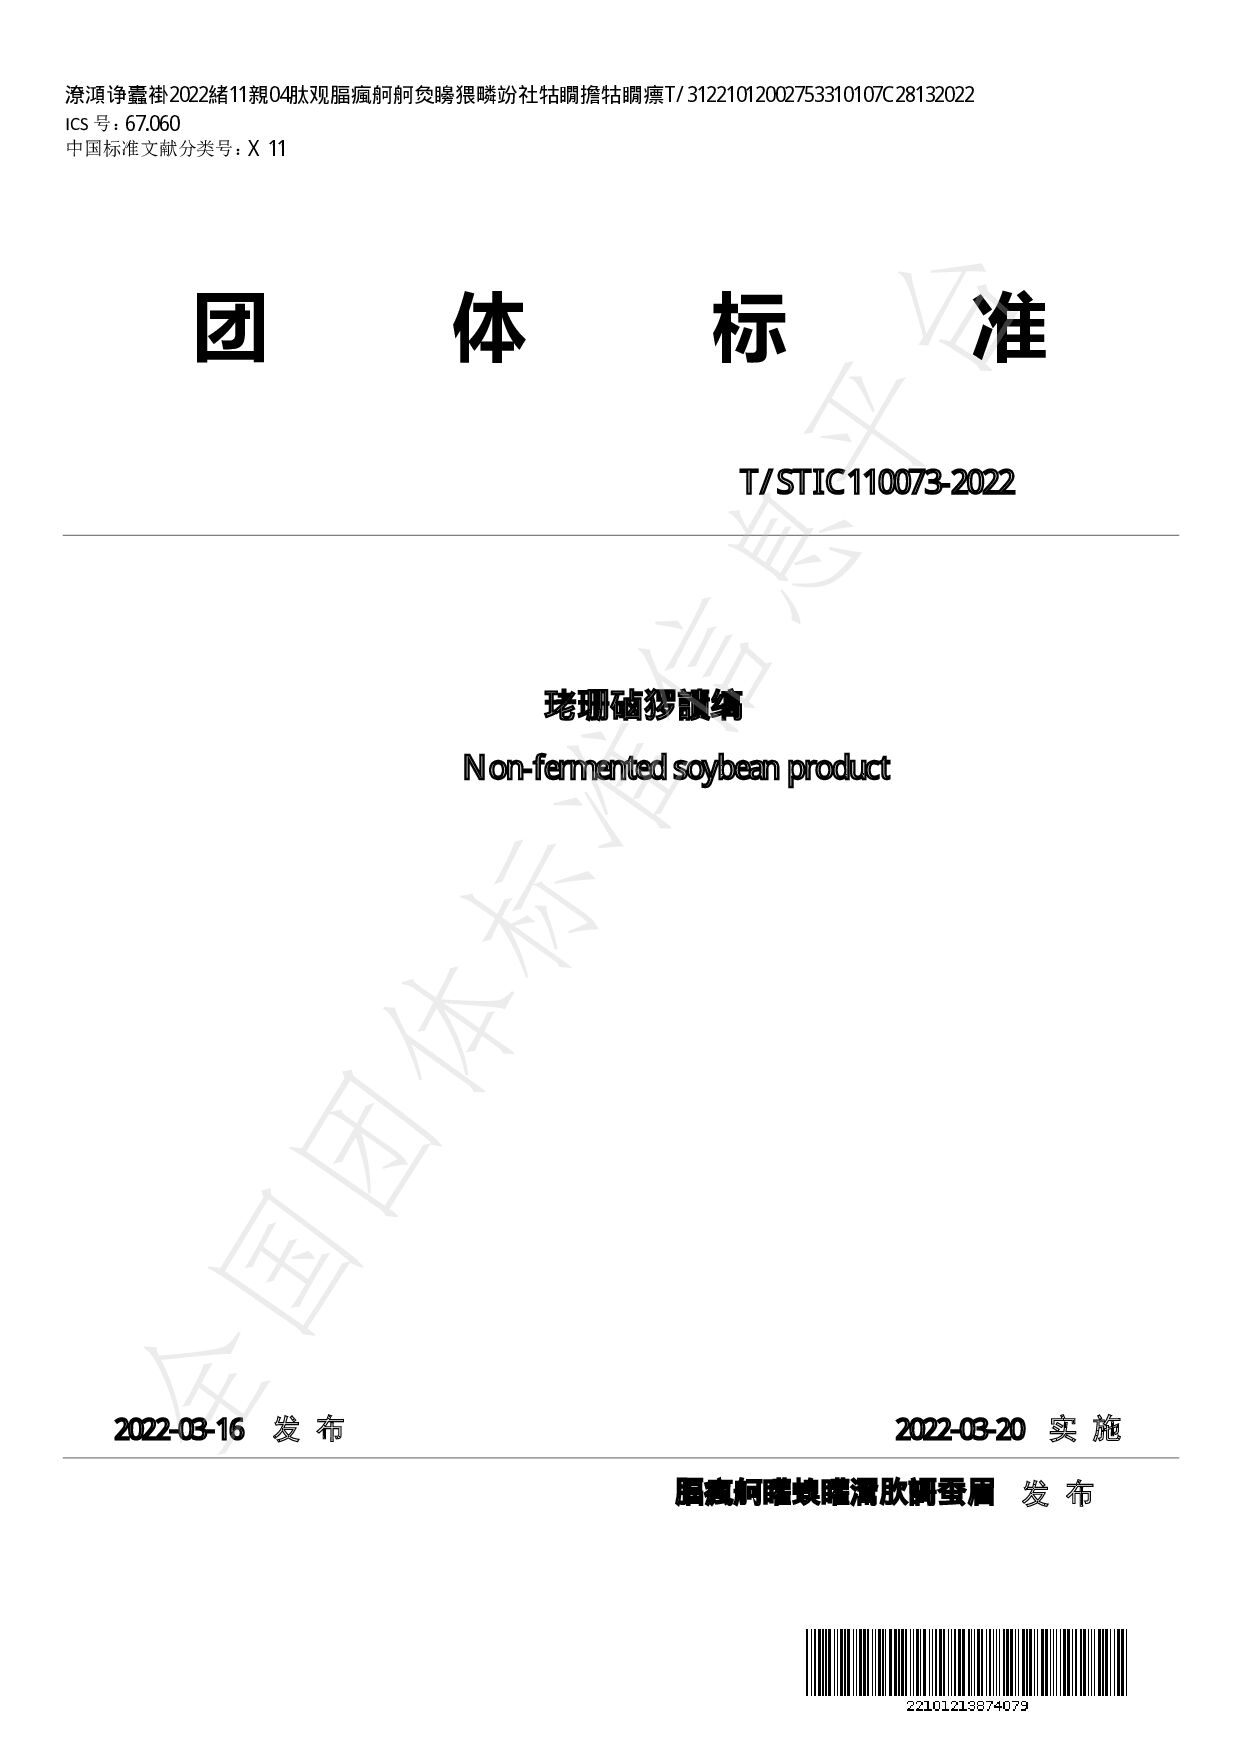 T/STIC 110073-2022封面图